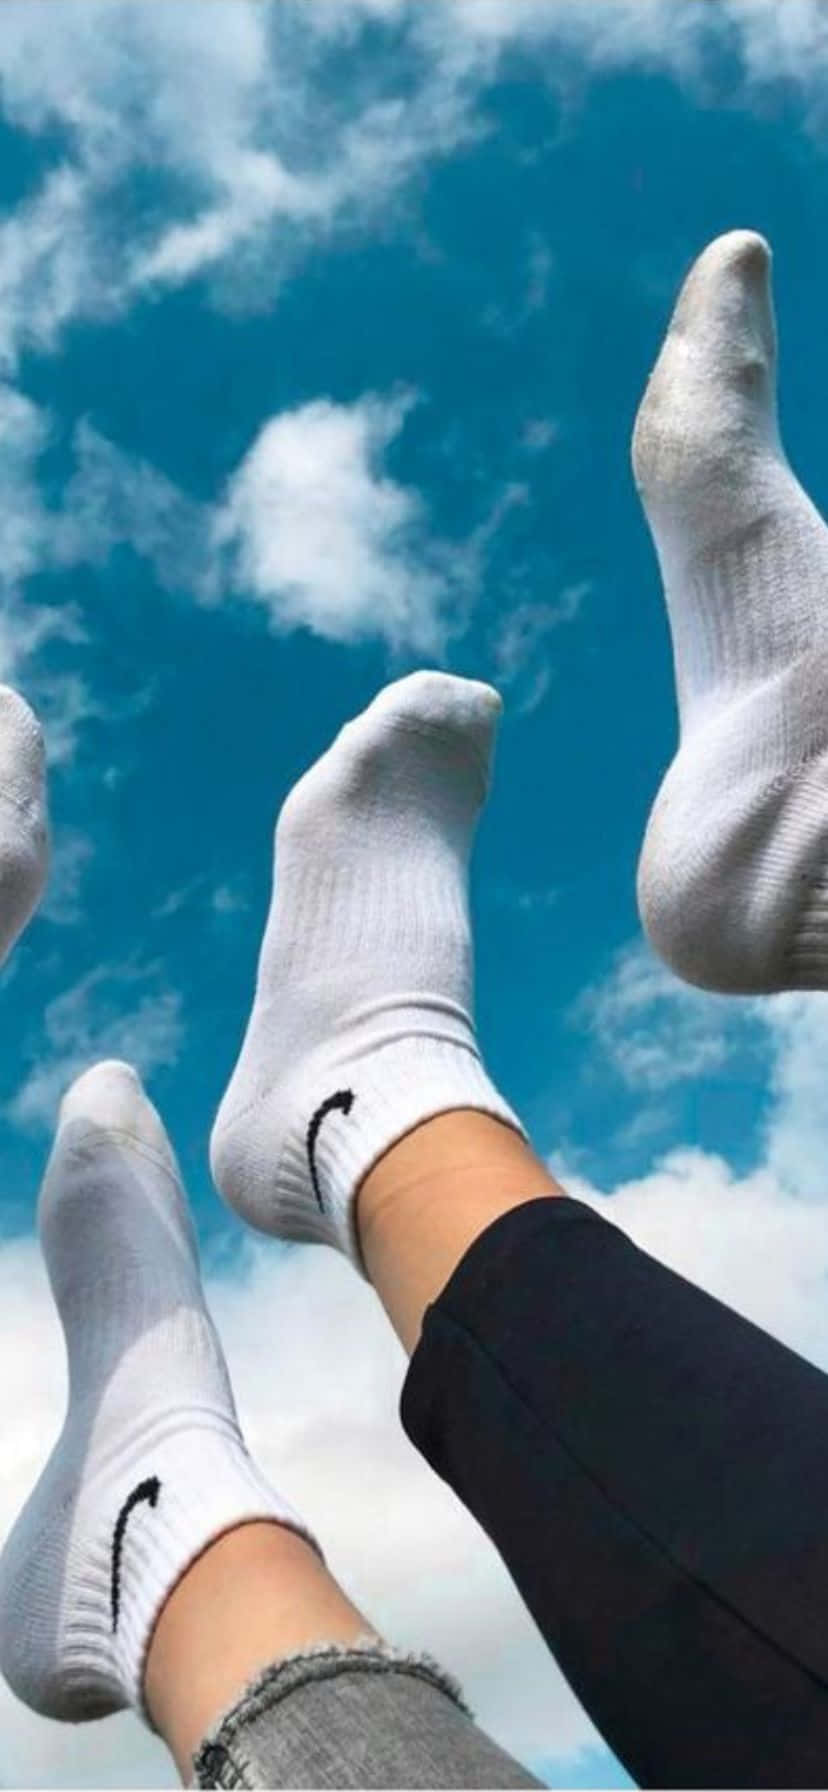 Feet Up Against Sky With White Socks.jpg Wallpaper